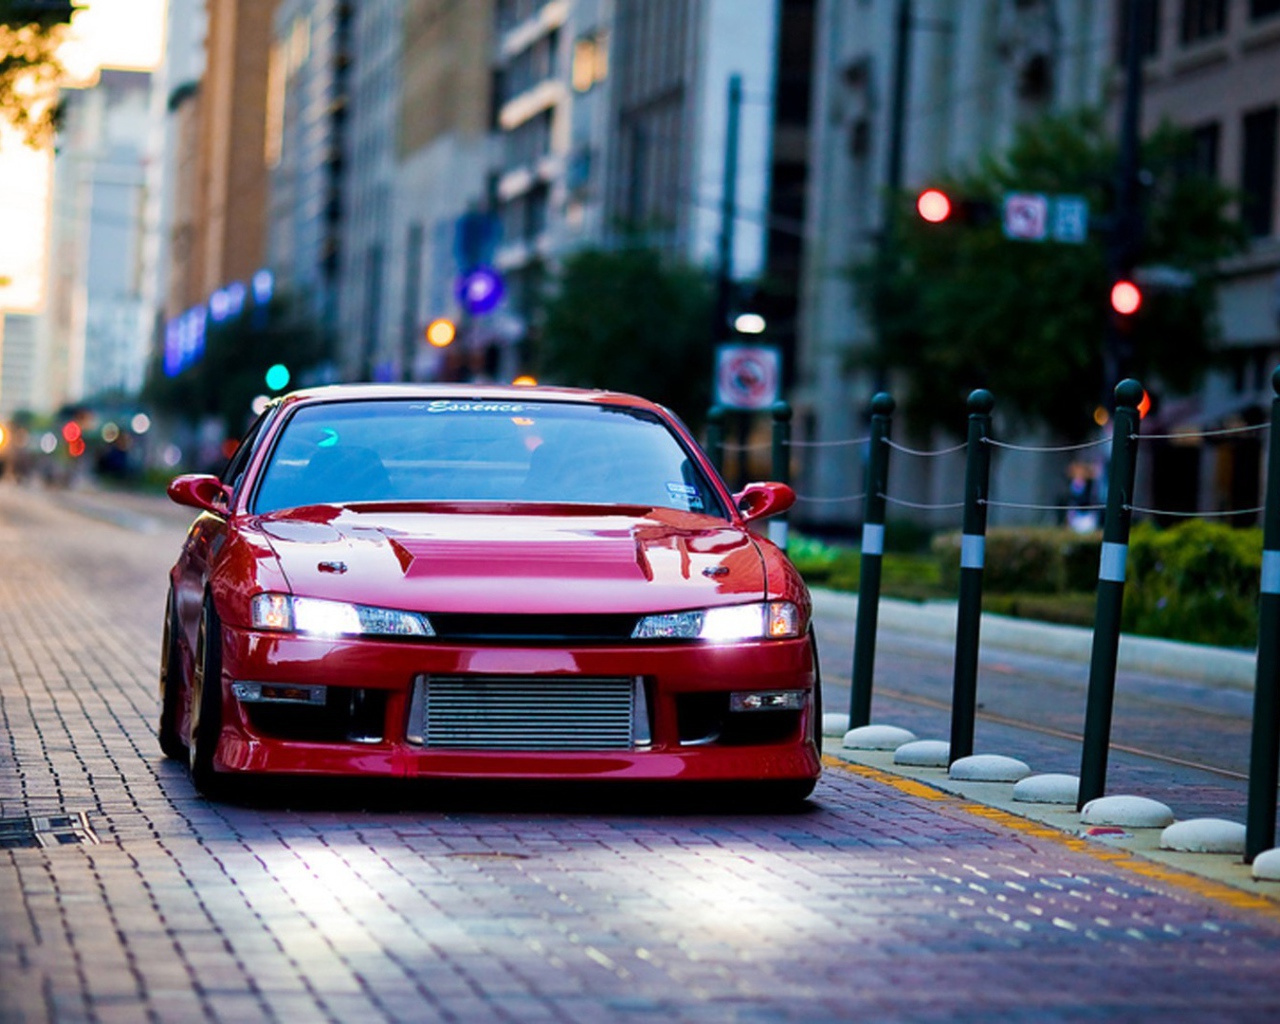 Красный Nissan GT-R на городской улице